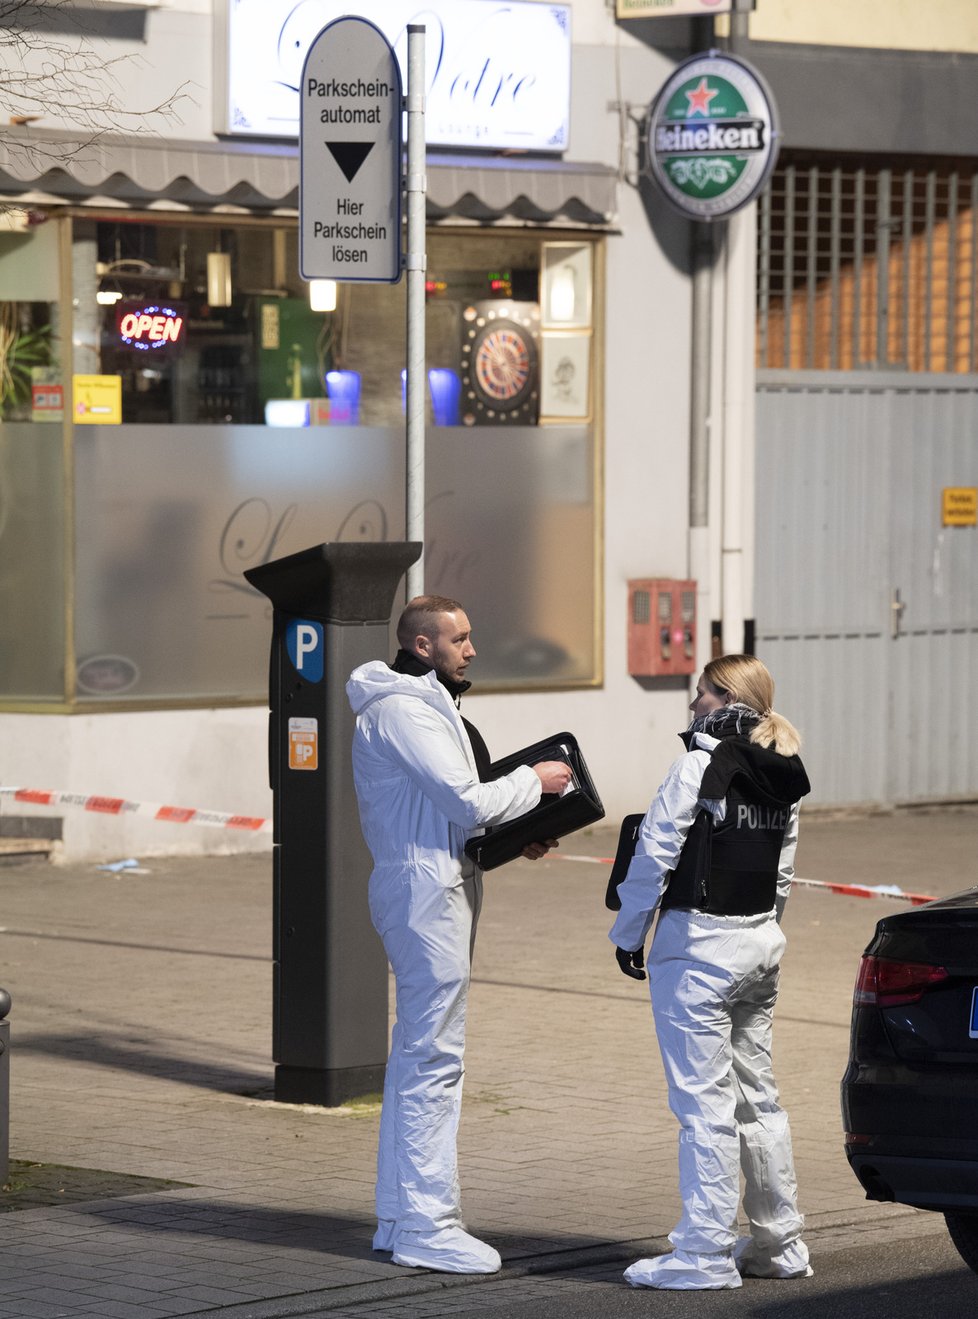 Ve městě Hanau u Frankfurtu nad Mohanem při střelbě zemřelo nejméně 9 lidí (20. 2. 2020)